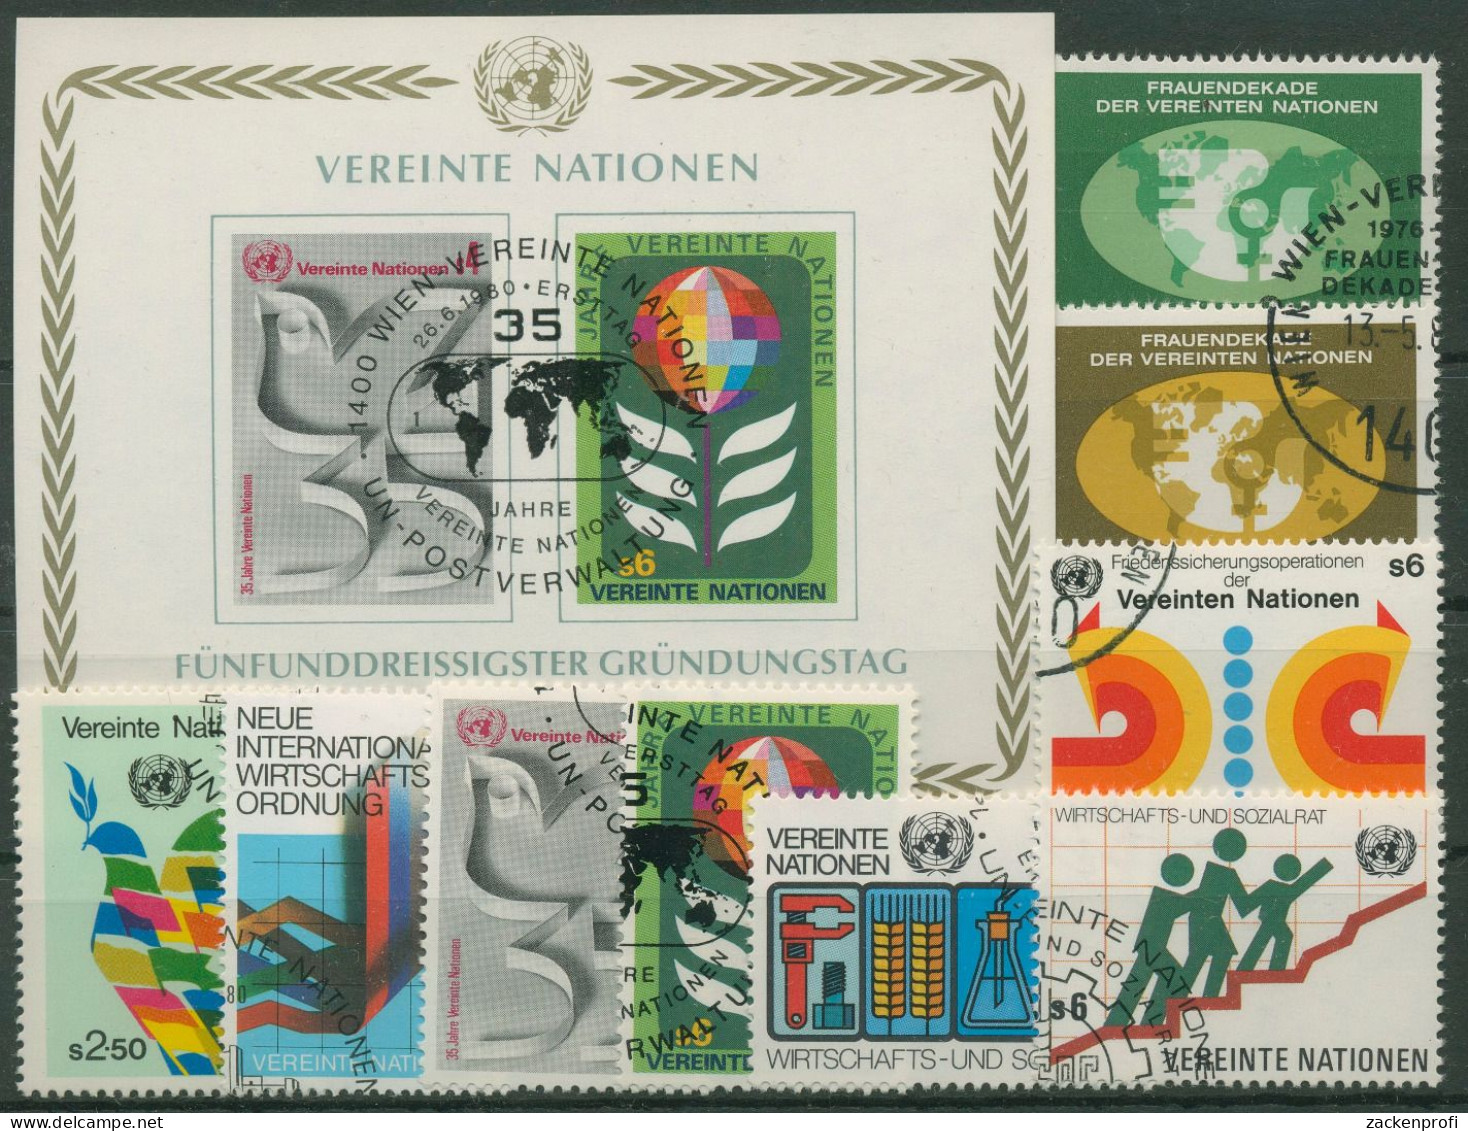 UNO Wien Jahrgang 1980 Komplett Gestempelt (G14482) - Used Stamps